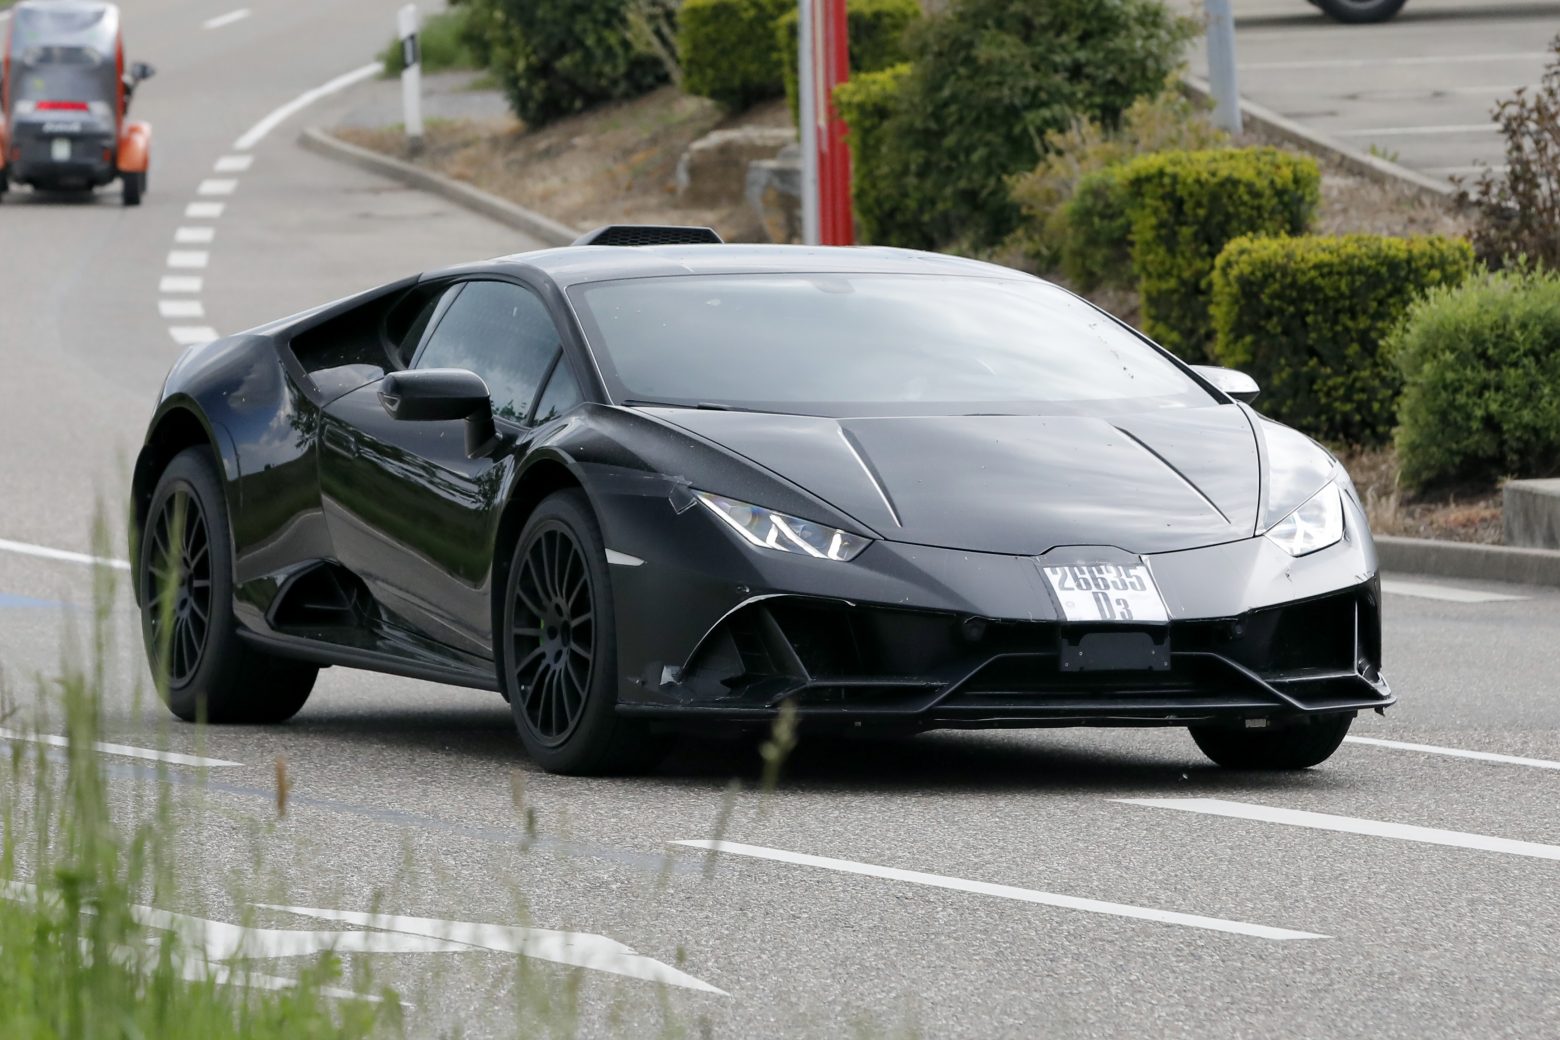 Η Lamborghini γράφει ιστορία - Γίνεται η πρώτη αυτοκινητοβιομηχανία στην ΕΕ που καθιερώνει την 4ήμερη εργασία